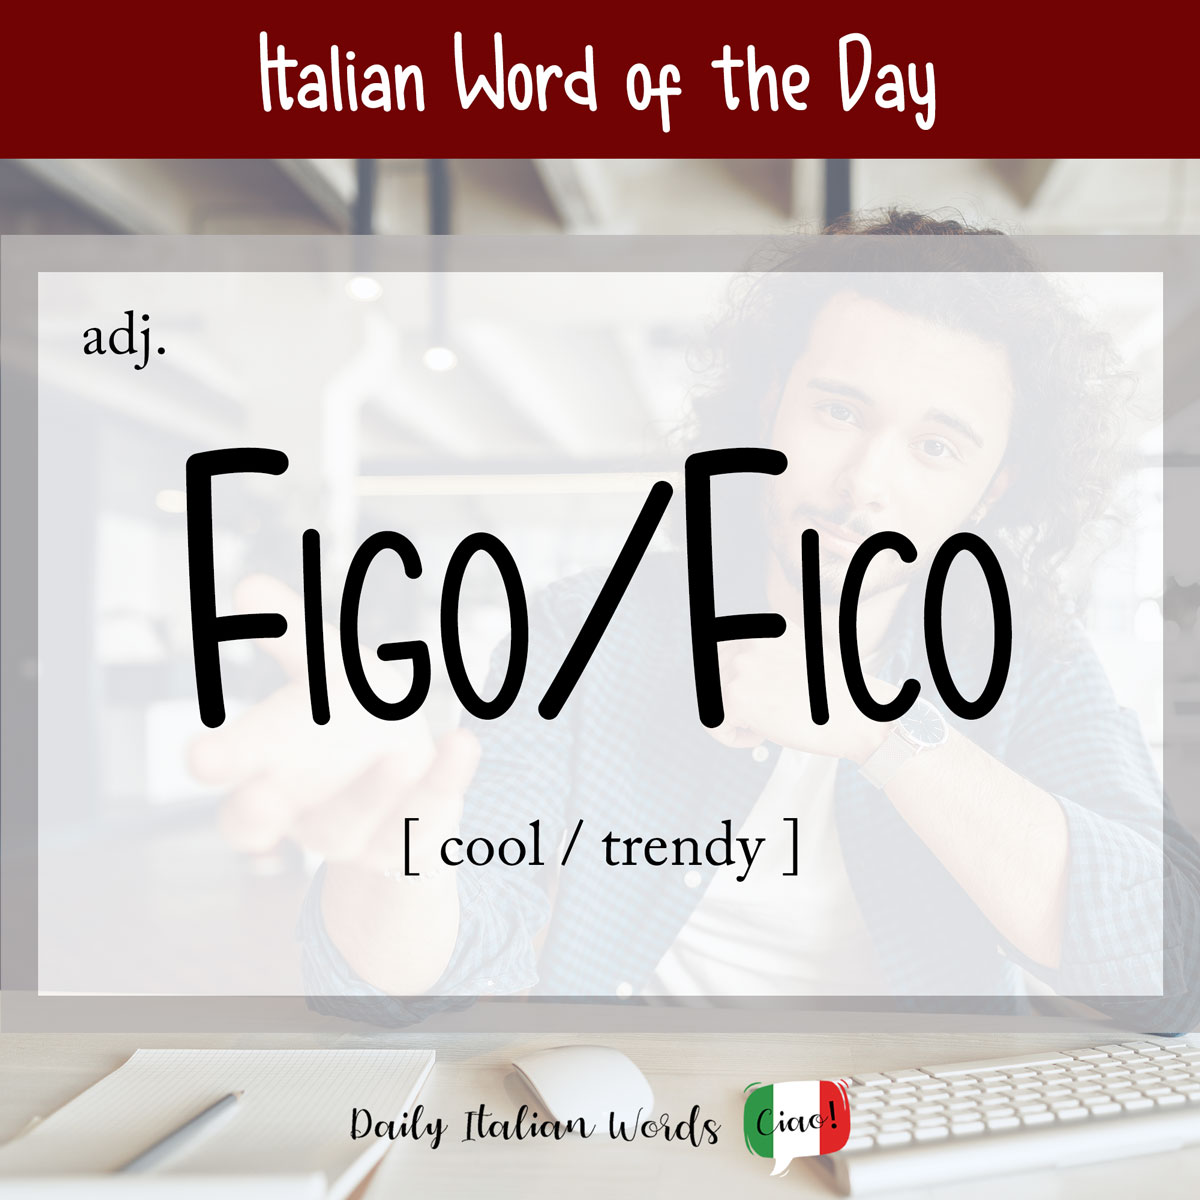 Italian word 'figo'